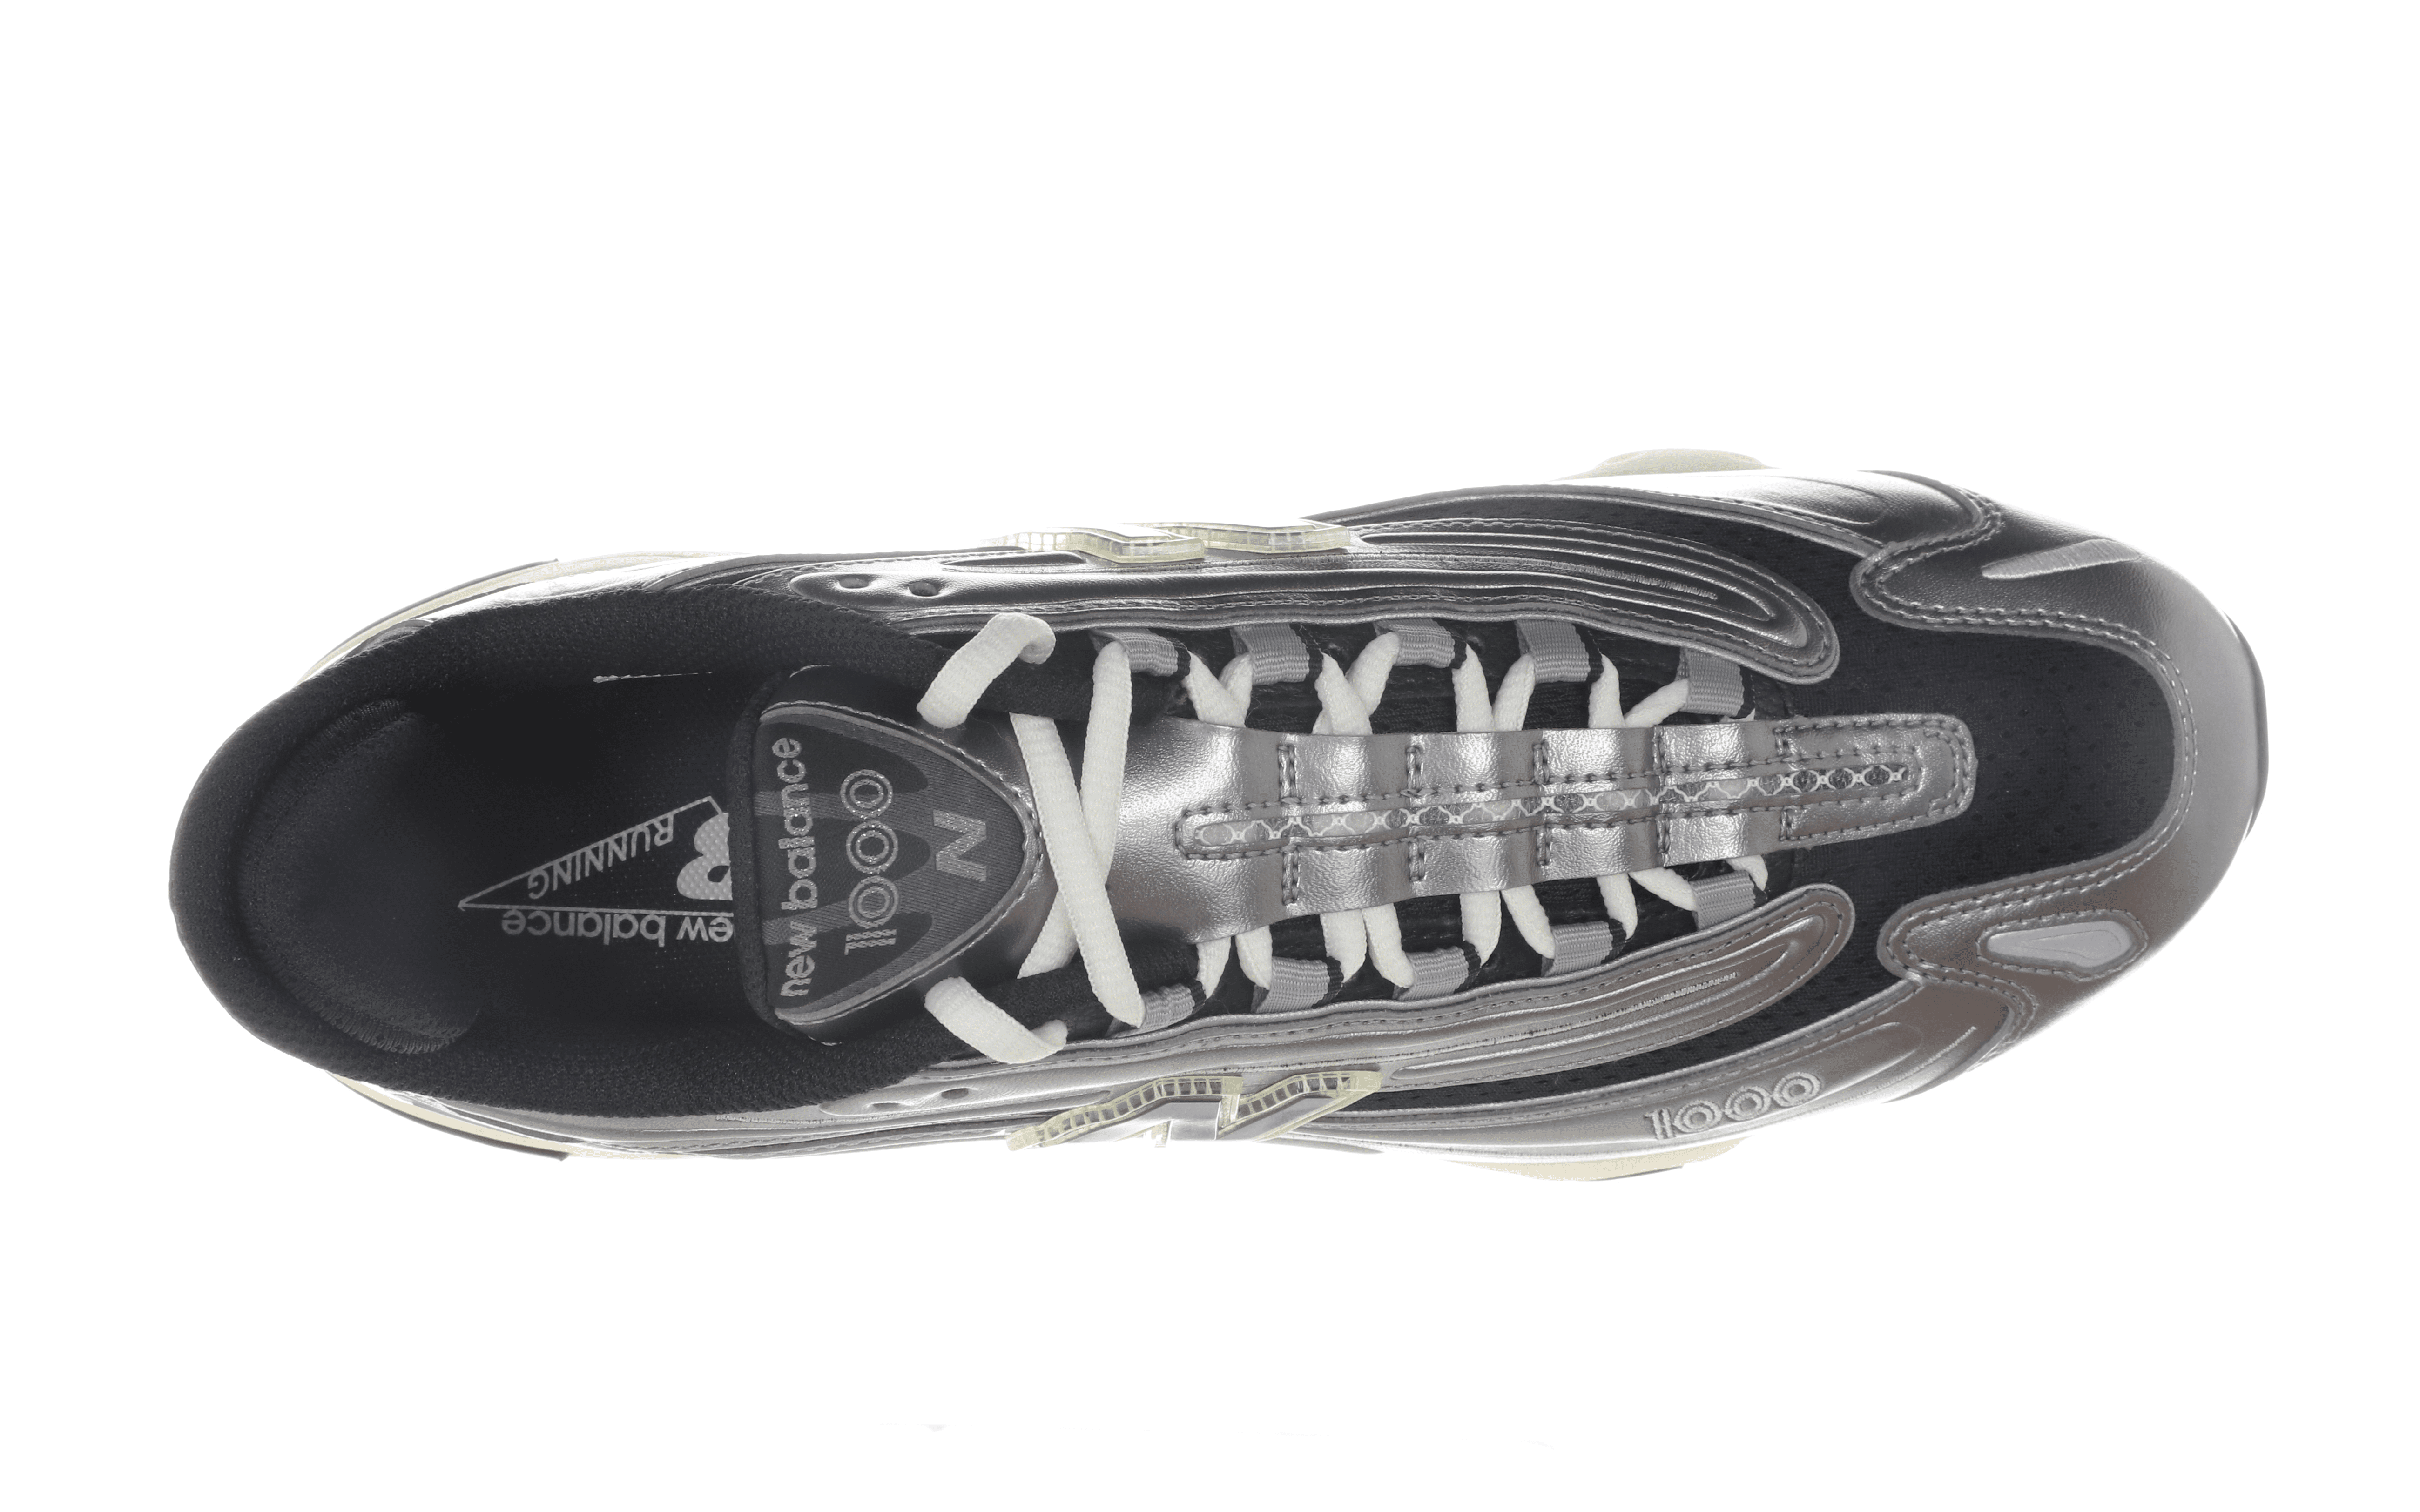 NEW BALANCE - Sneakers - M1000SL - Metallic Silver Scarpe Uomo NEW BALANCE - Collezione Uomo 